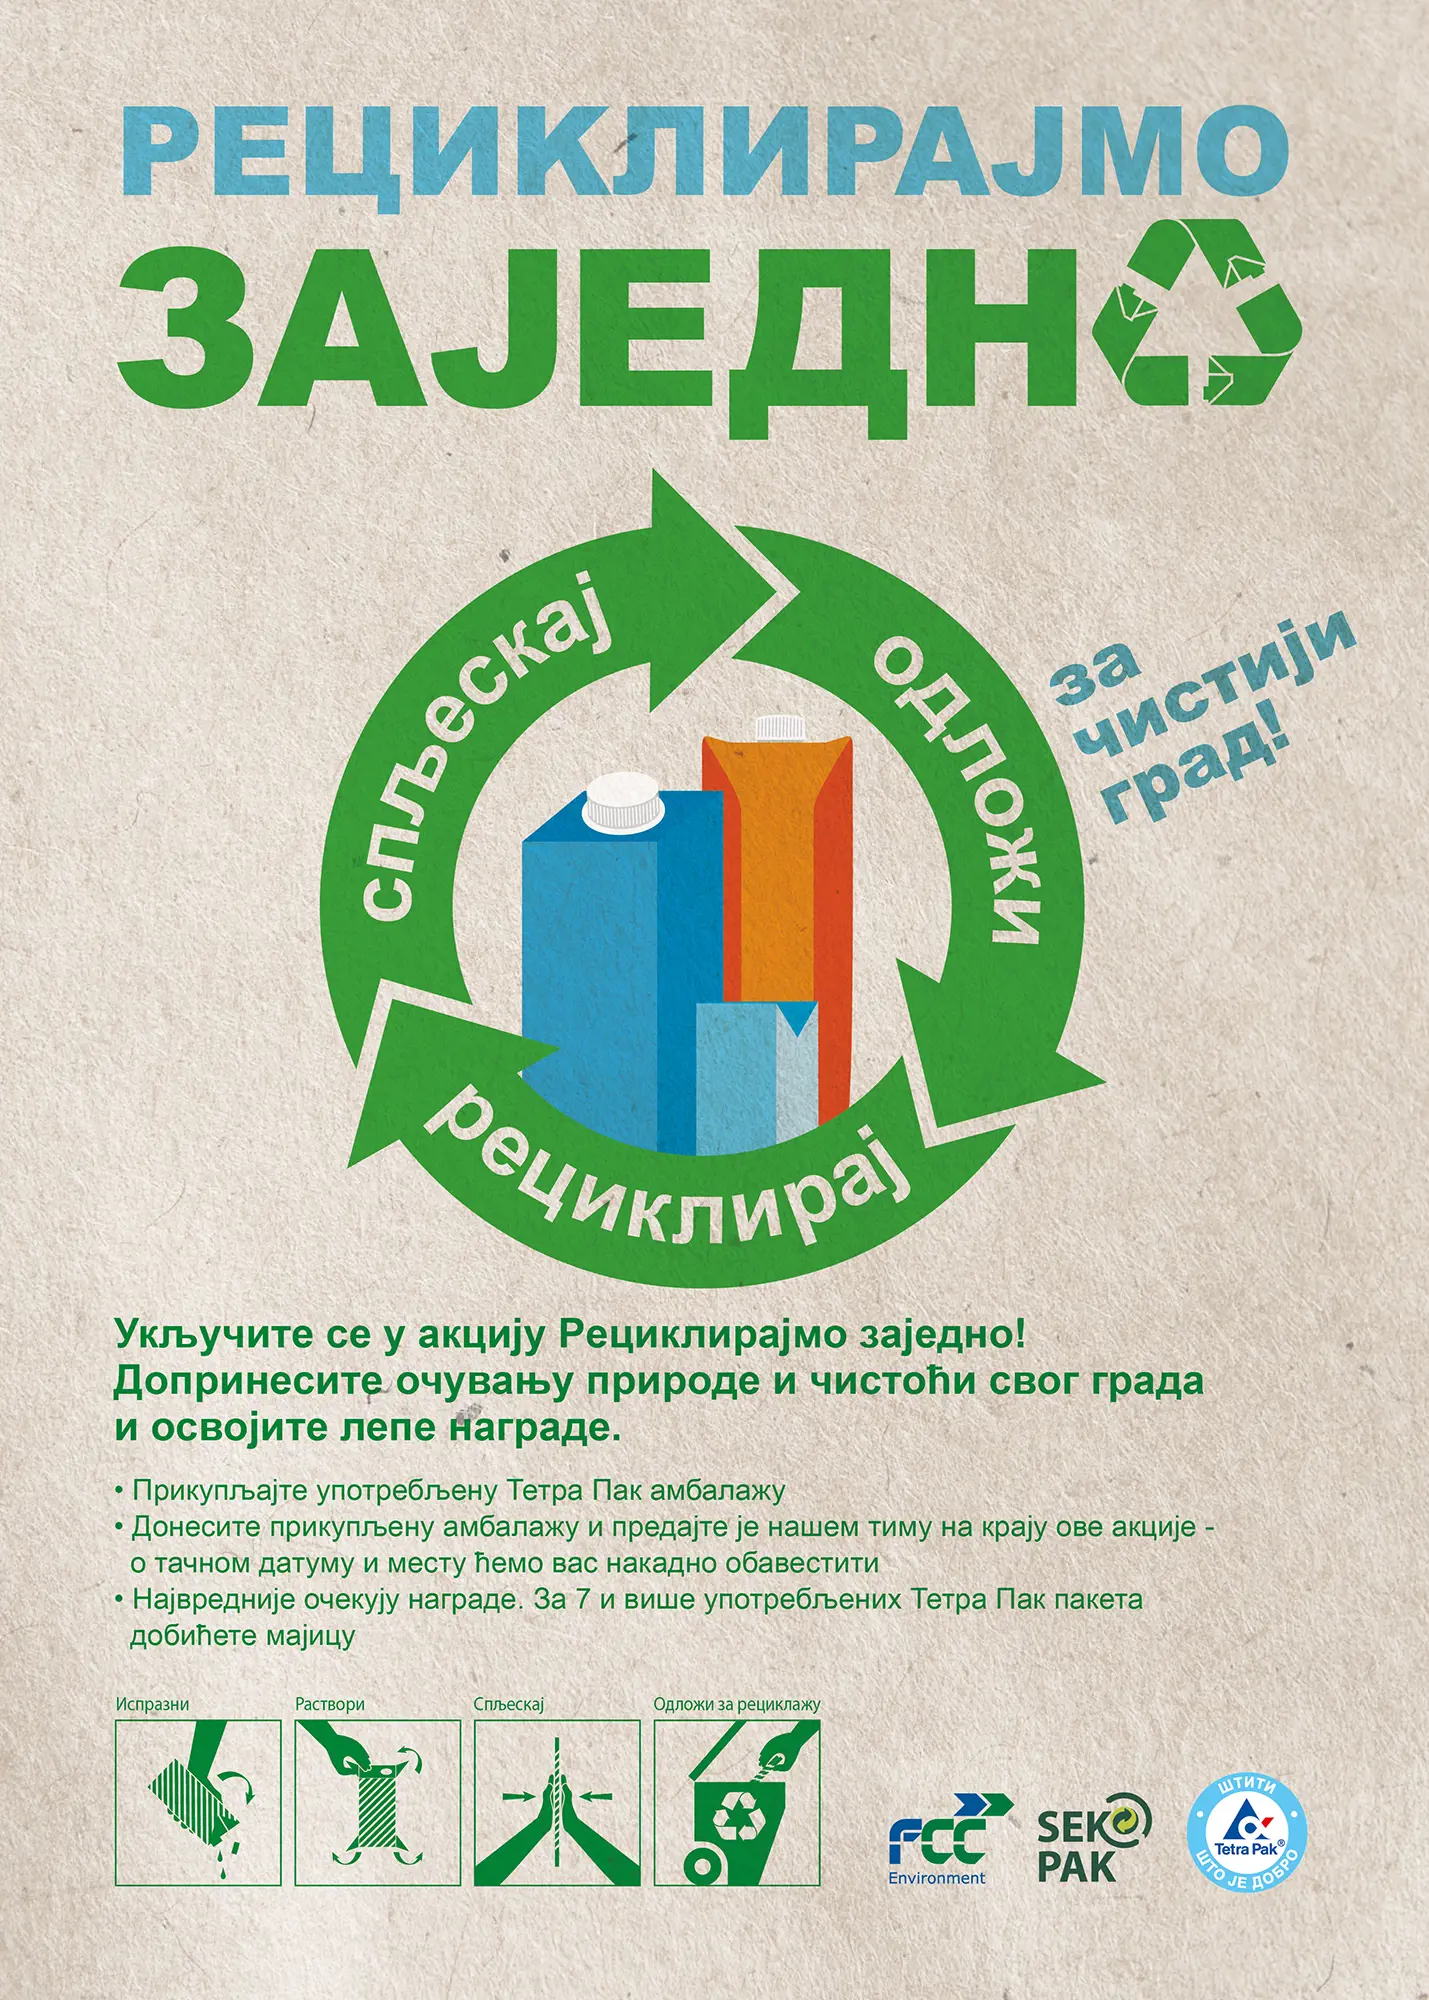 Reciklirajmo zajedno - edukativna kampanja kompanija Tetra Pak, A.S.A. i Sekopak